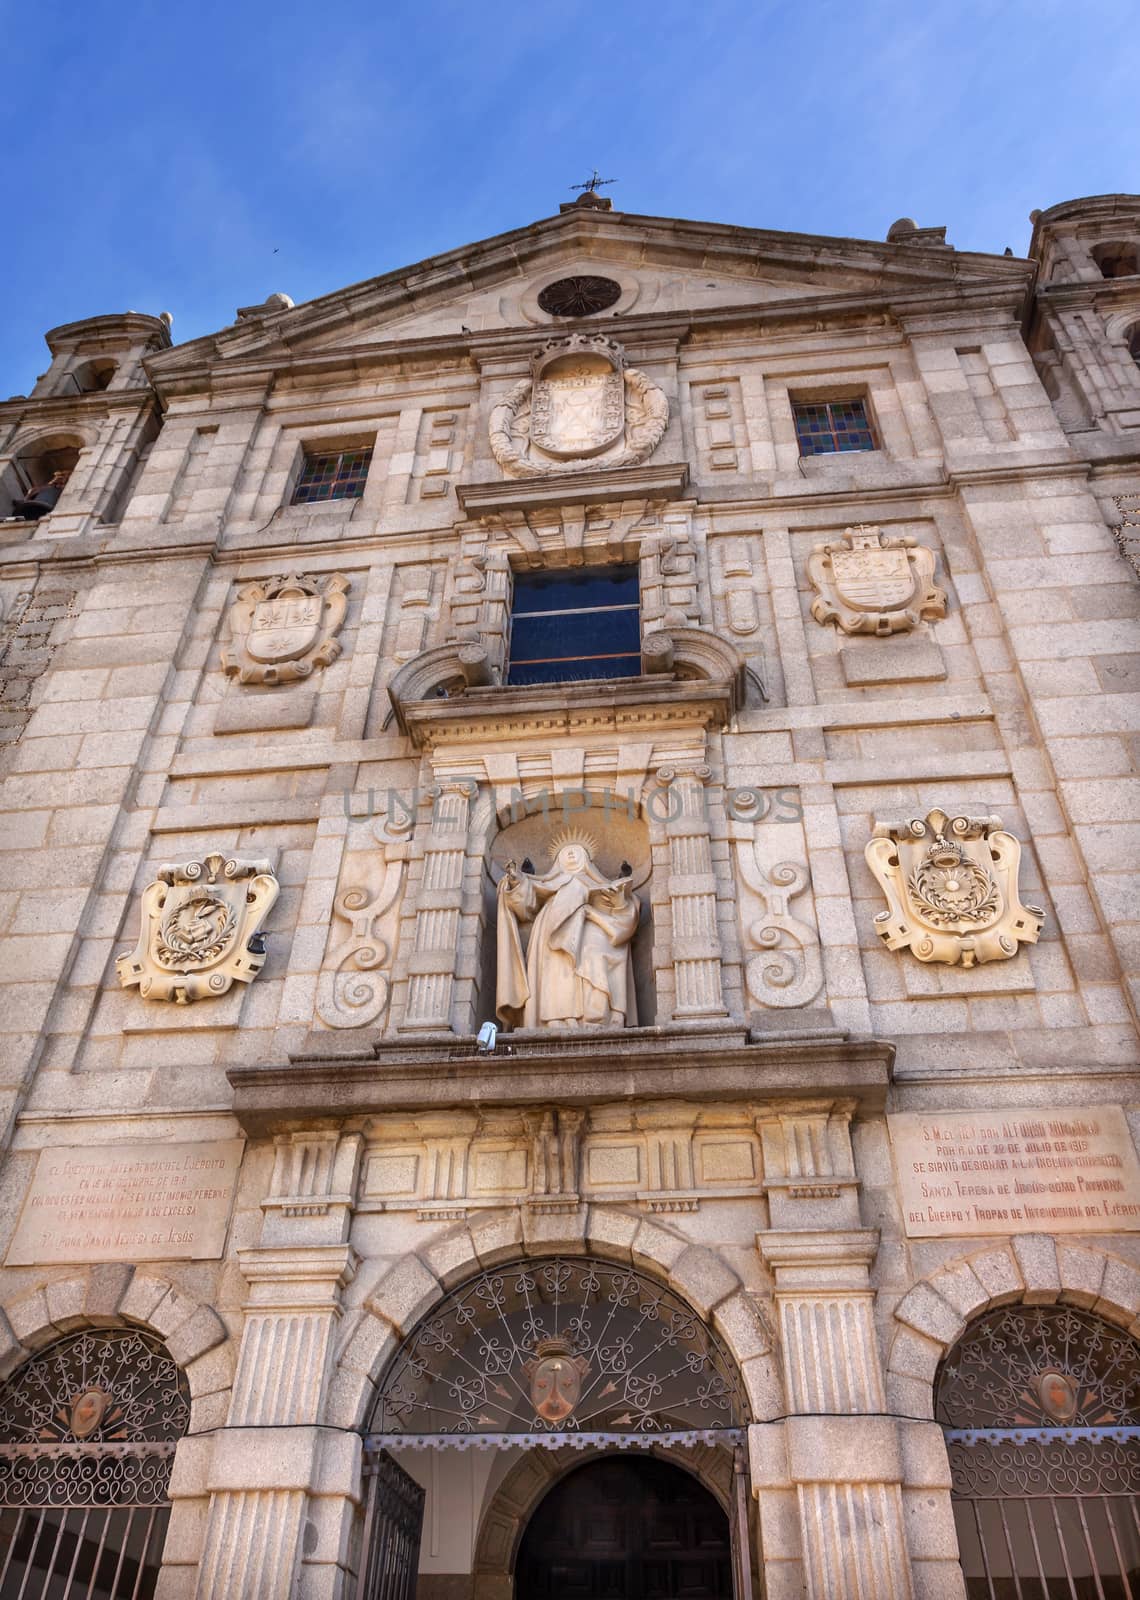 Convento de Santa Teresa Facade Swallows Avila Castile Spain by bill_perry